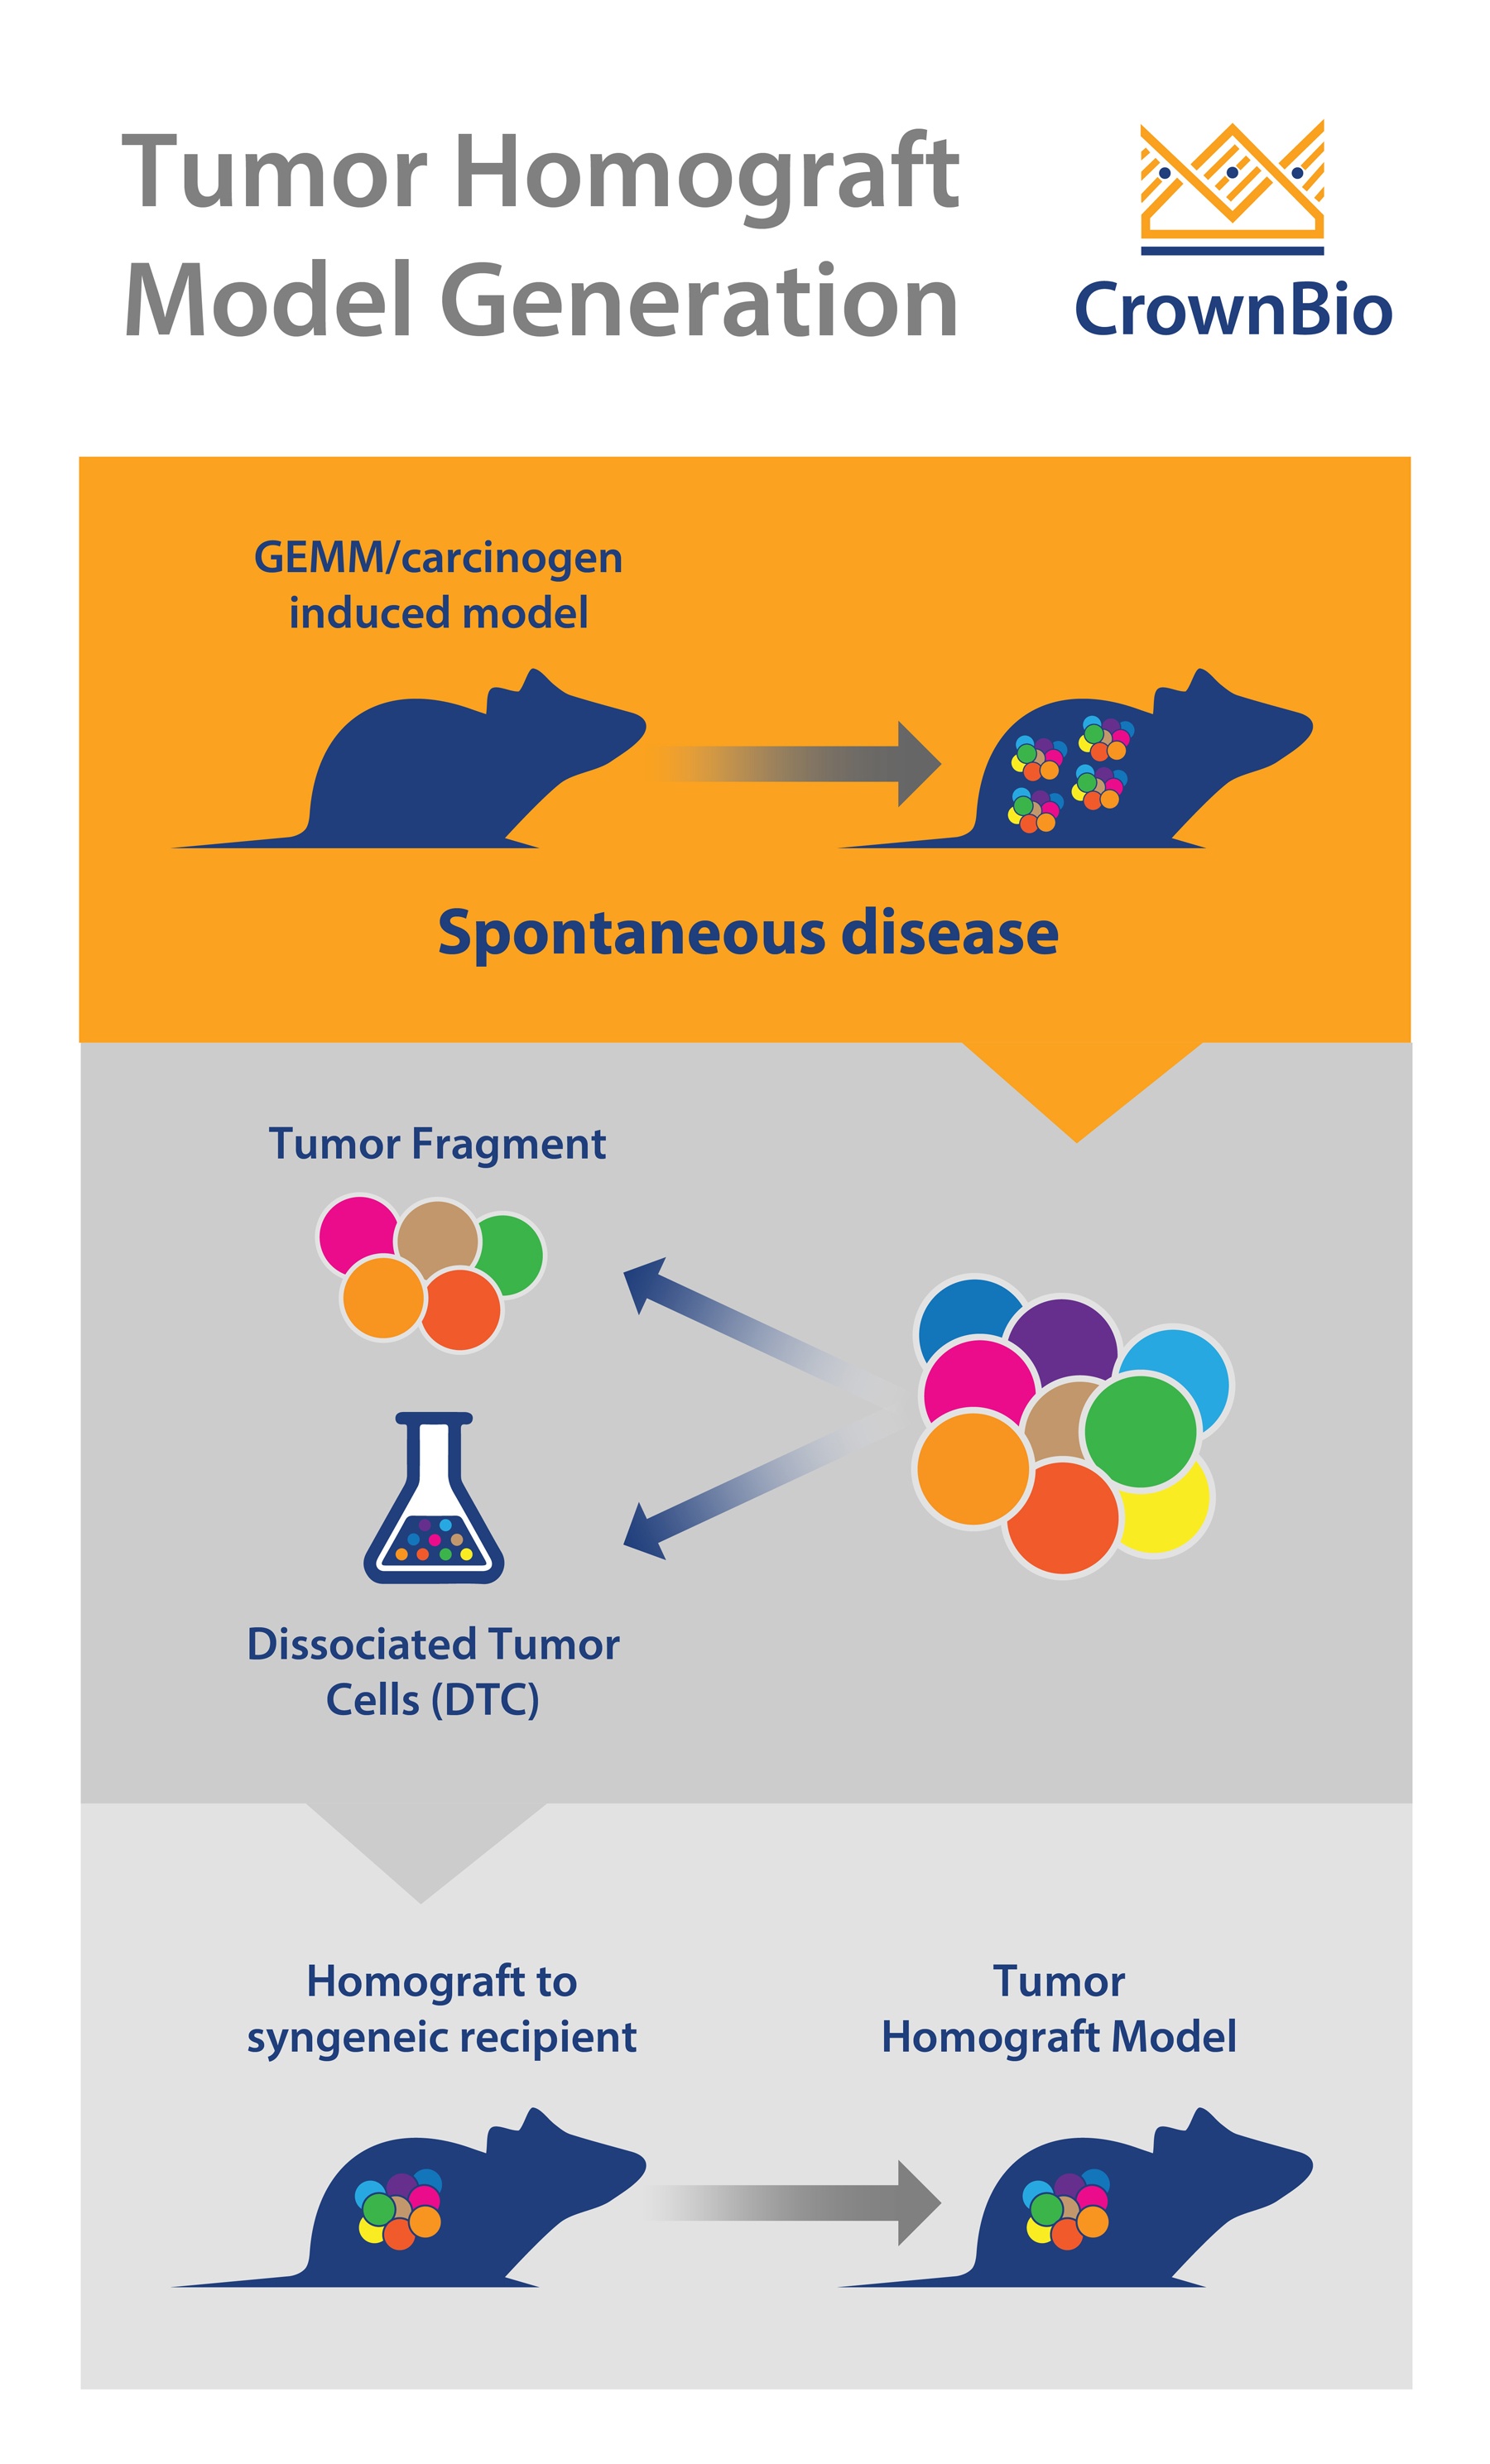 Tumor Homograft Model Generation: Dissociated Tumor Cells vs Tumor Fragments